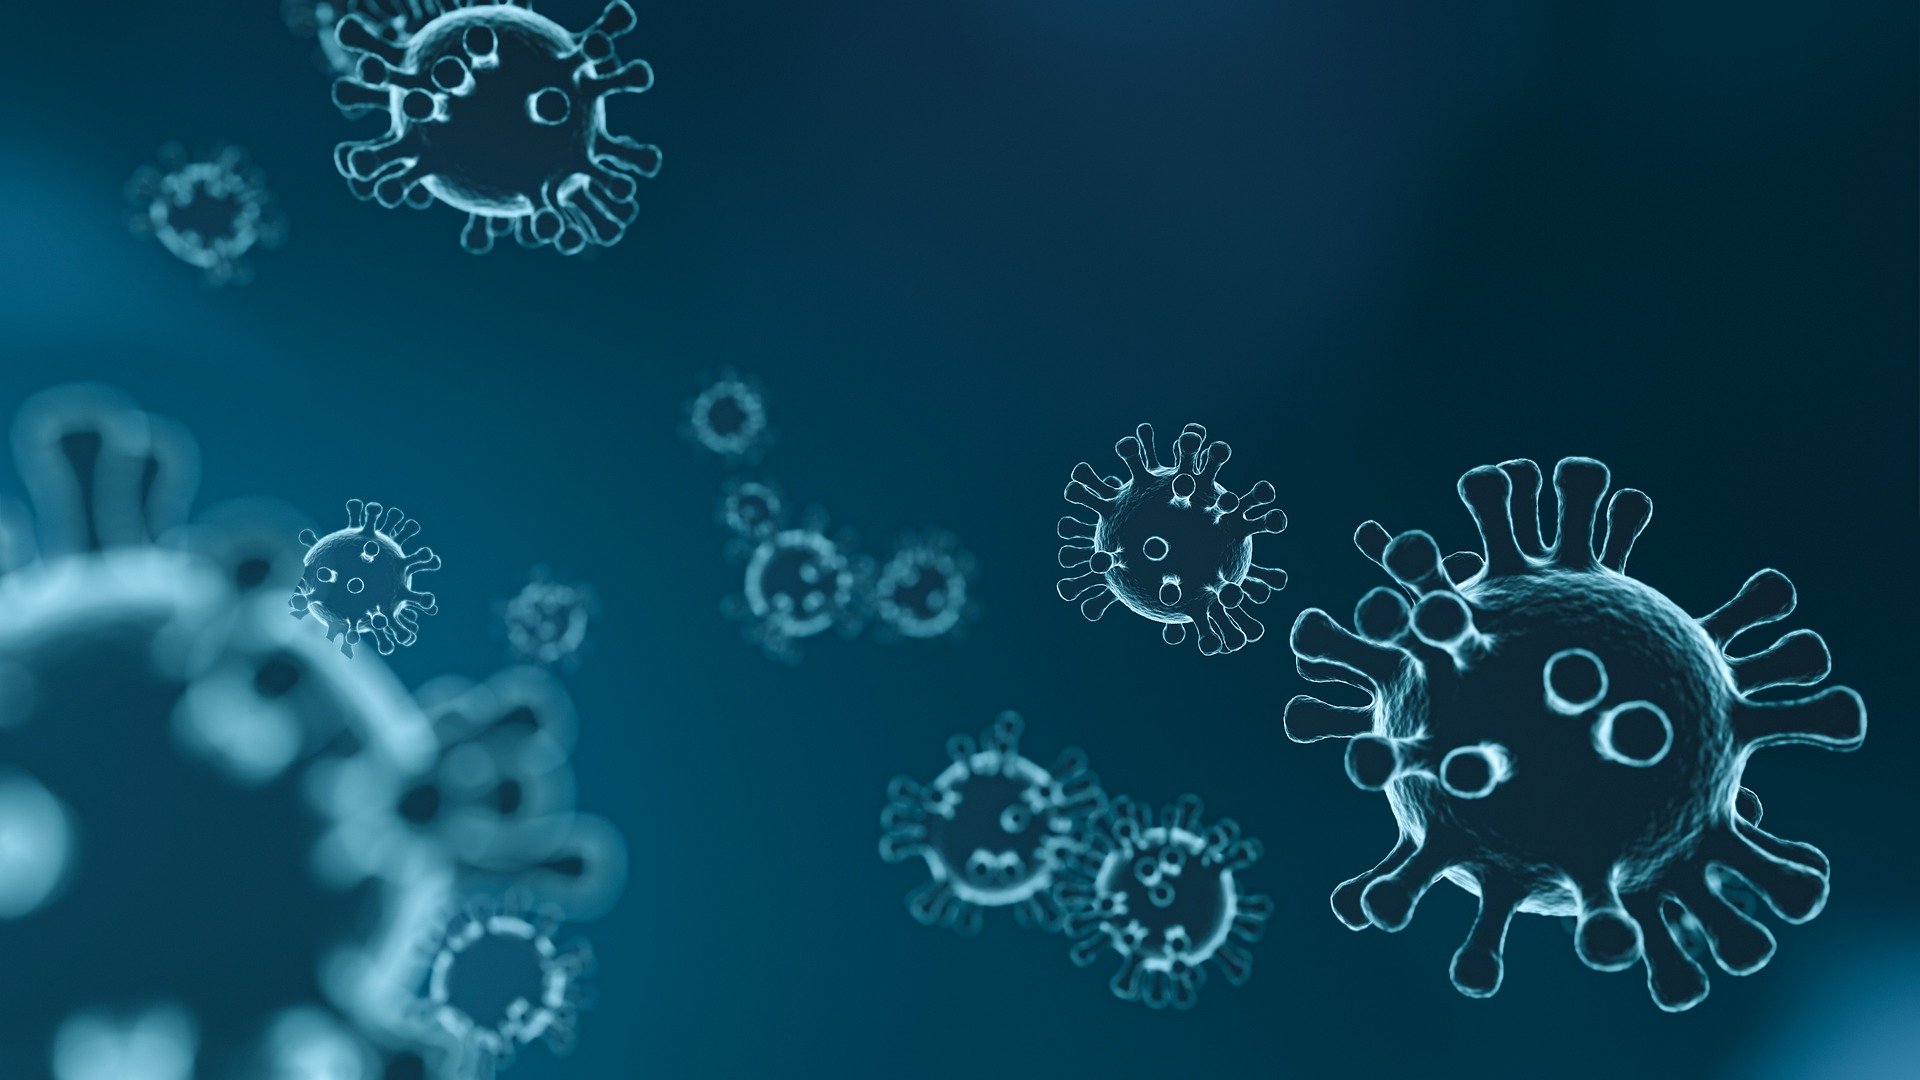 Coronavirusul suferă mutații și devine mai agresiv, spun cercetătorii